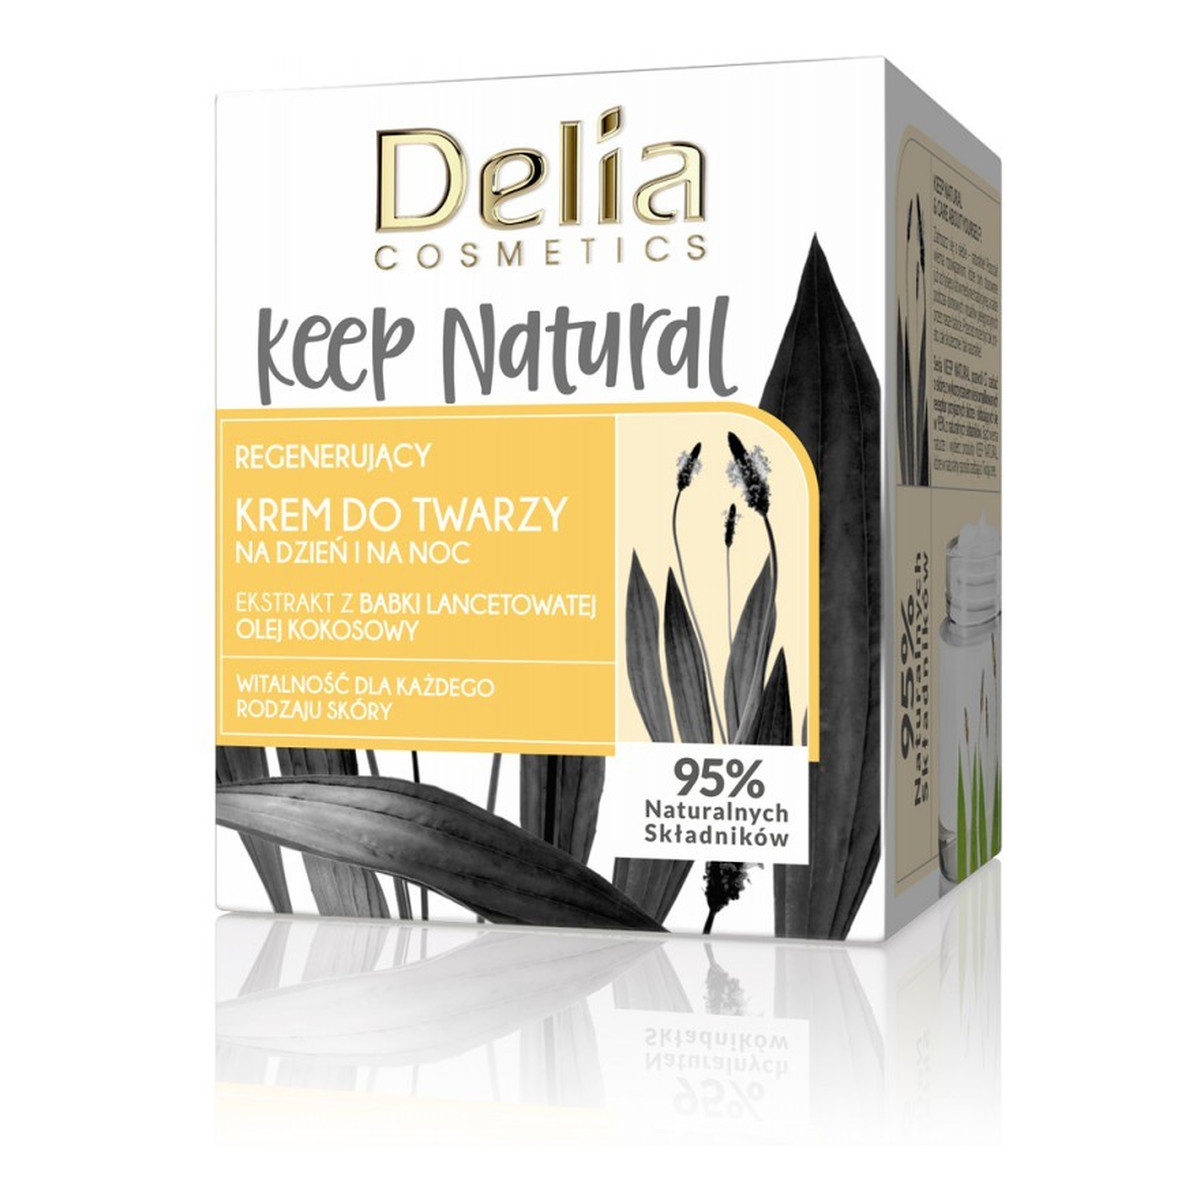 Delia Keep Natural Regenerujący Krem do twarzy na dzień i noc 50ml